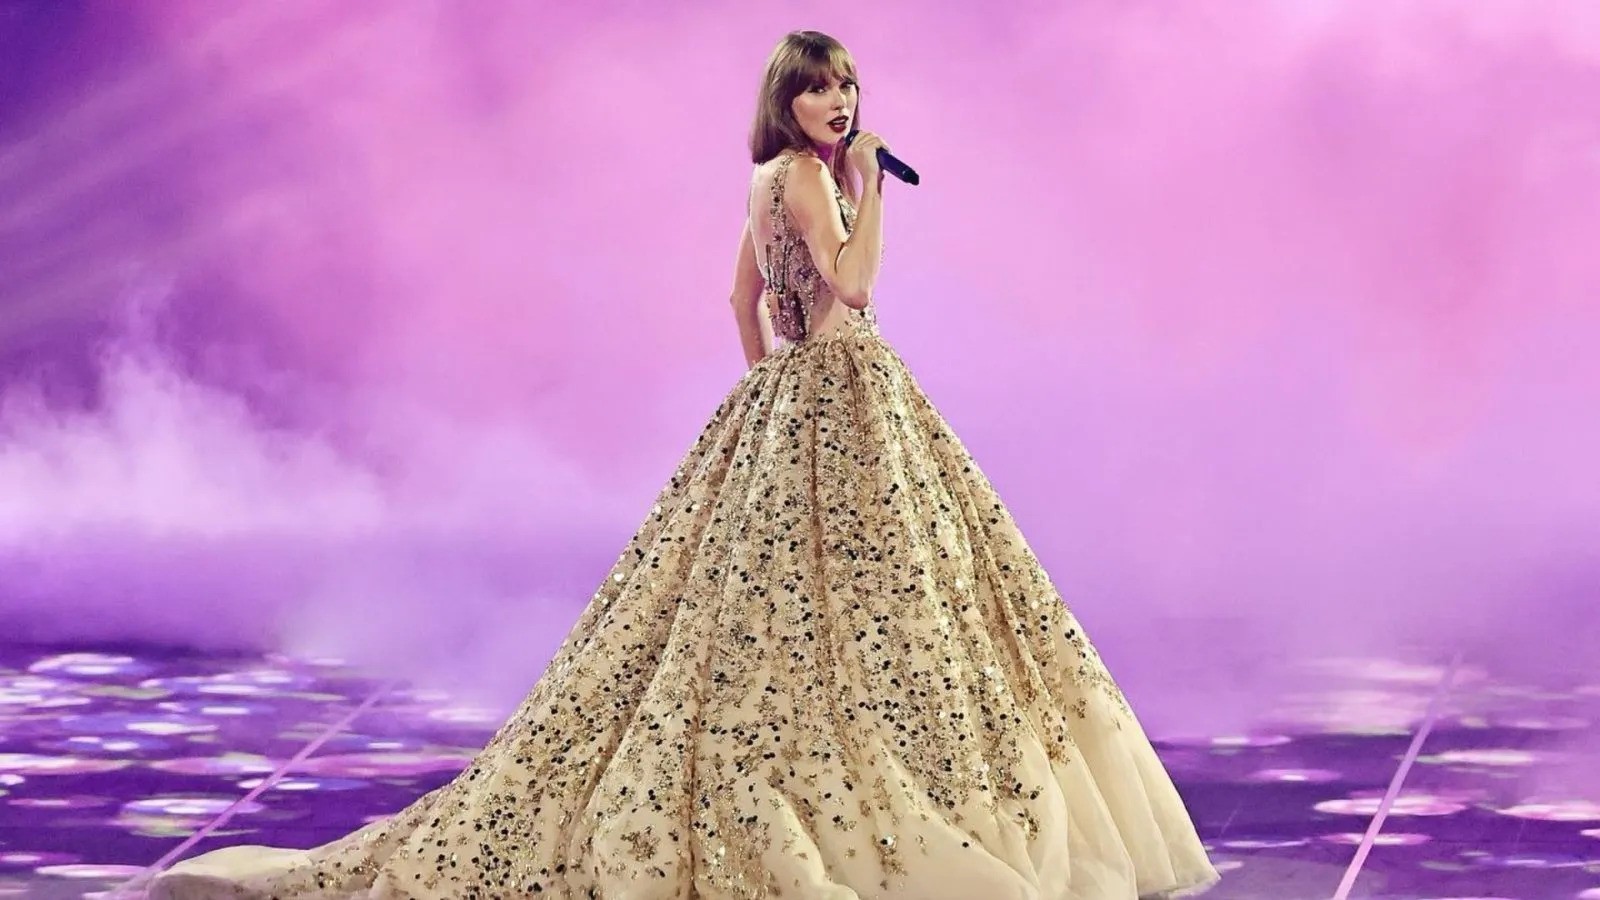 Truket e sukseshme të marketingut që duhet të mësojmë nga Taylor Swift